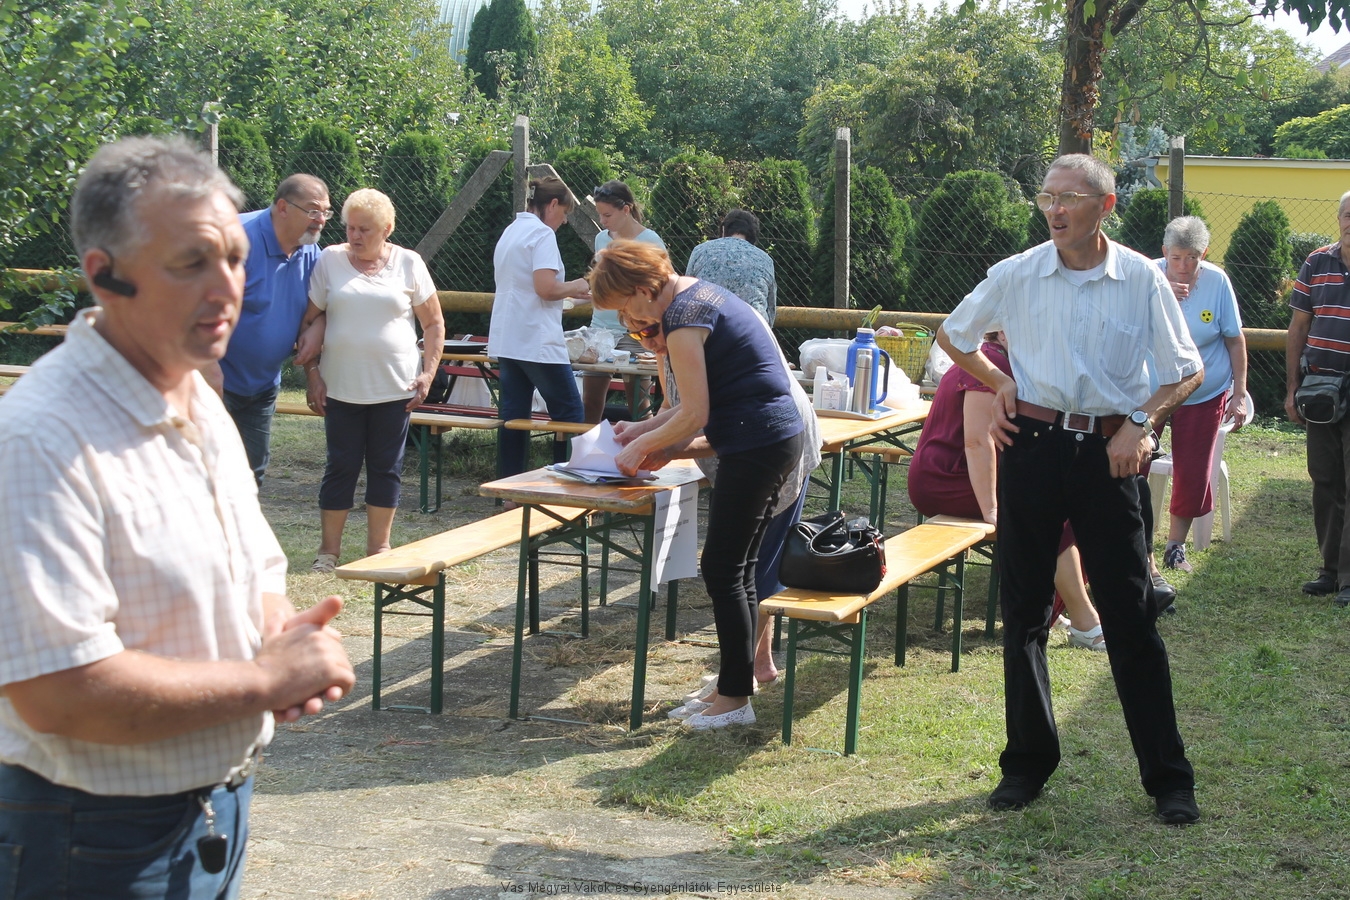 Bősze György elnök úr megnyitja a lengőteke bajnokságot. 3 csapat versenyzett: az Intézmény csapata, a mozgáskorlátozottak csapata és a VGYVE csapata volt a kihívó. A bajnokságot a SZMJV támogatta.